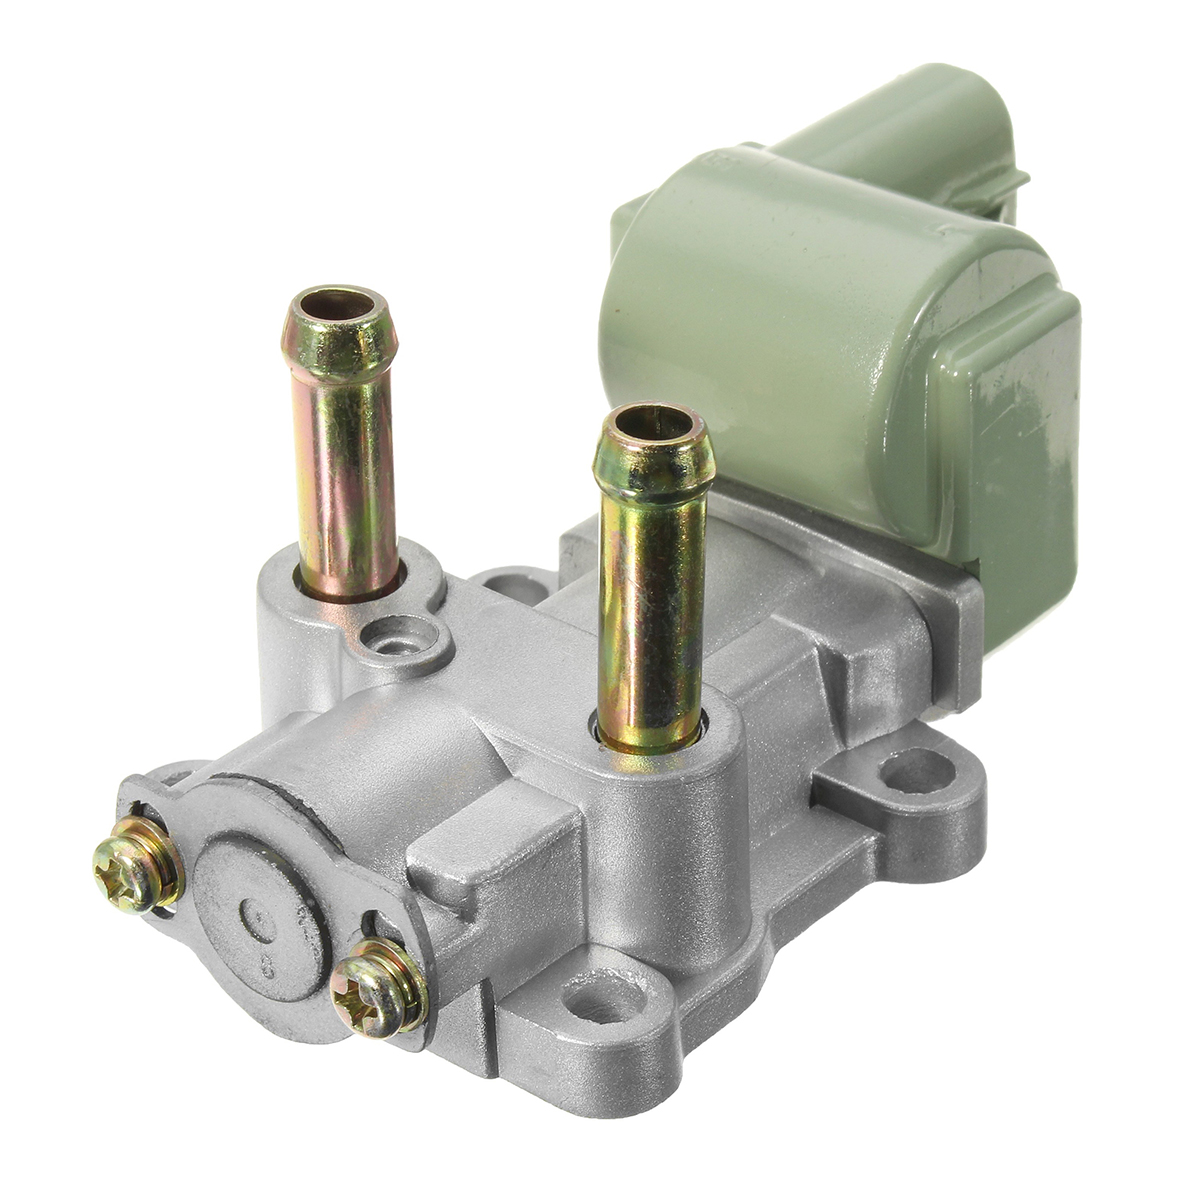 1998 honda civic lx manual transmission iac valve